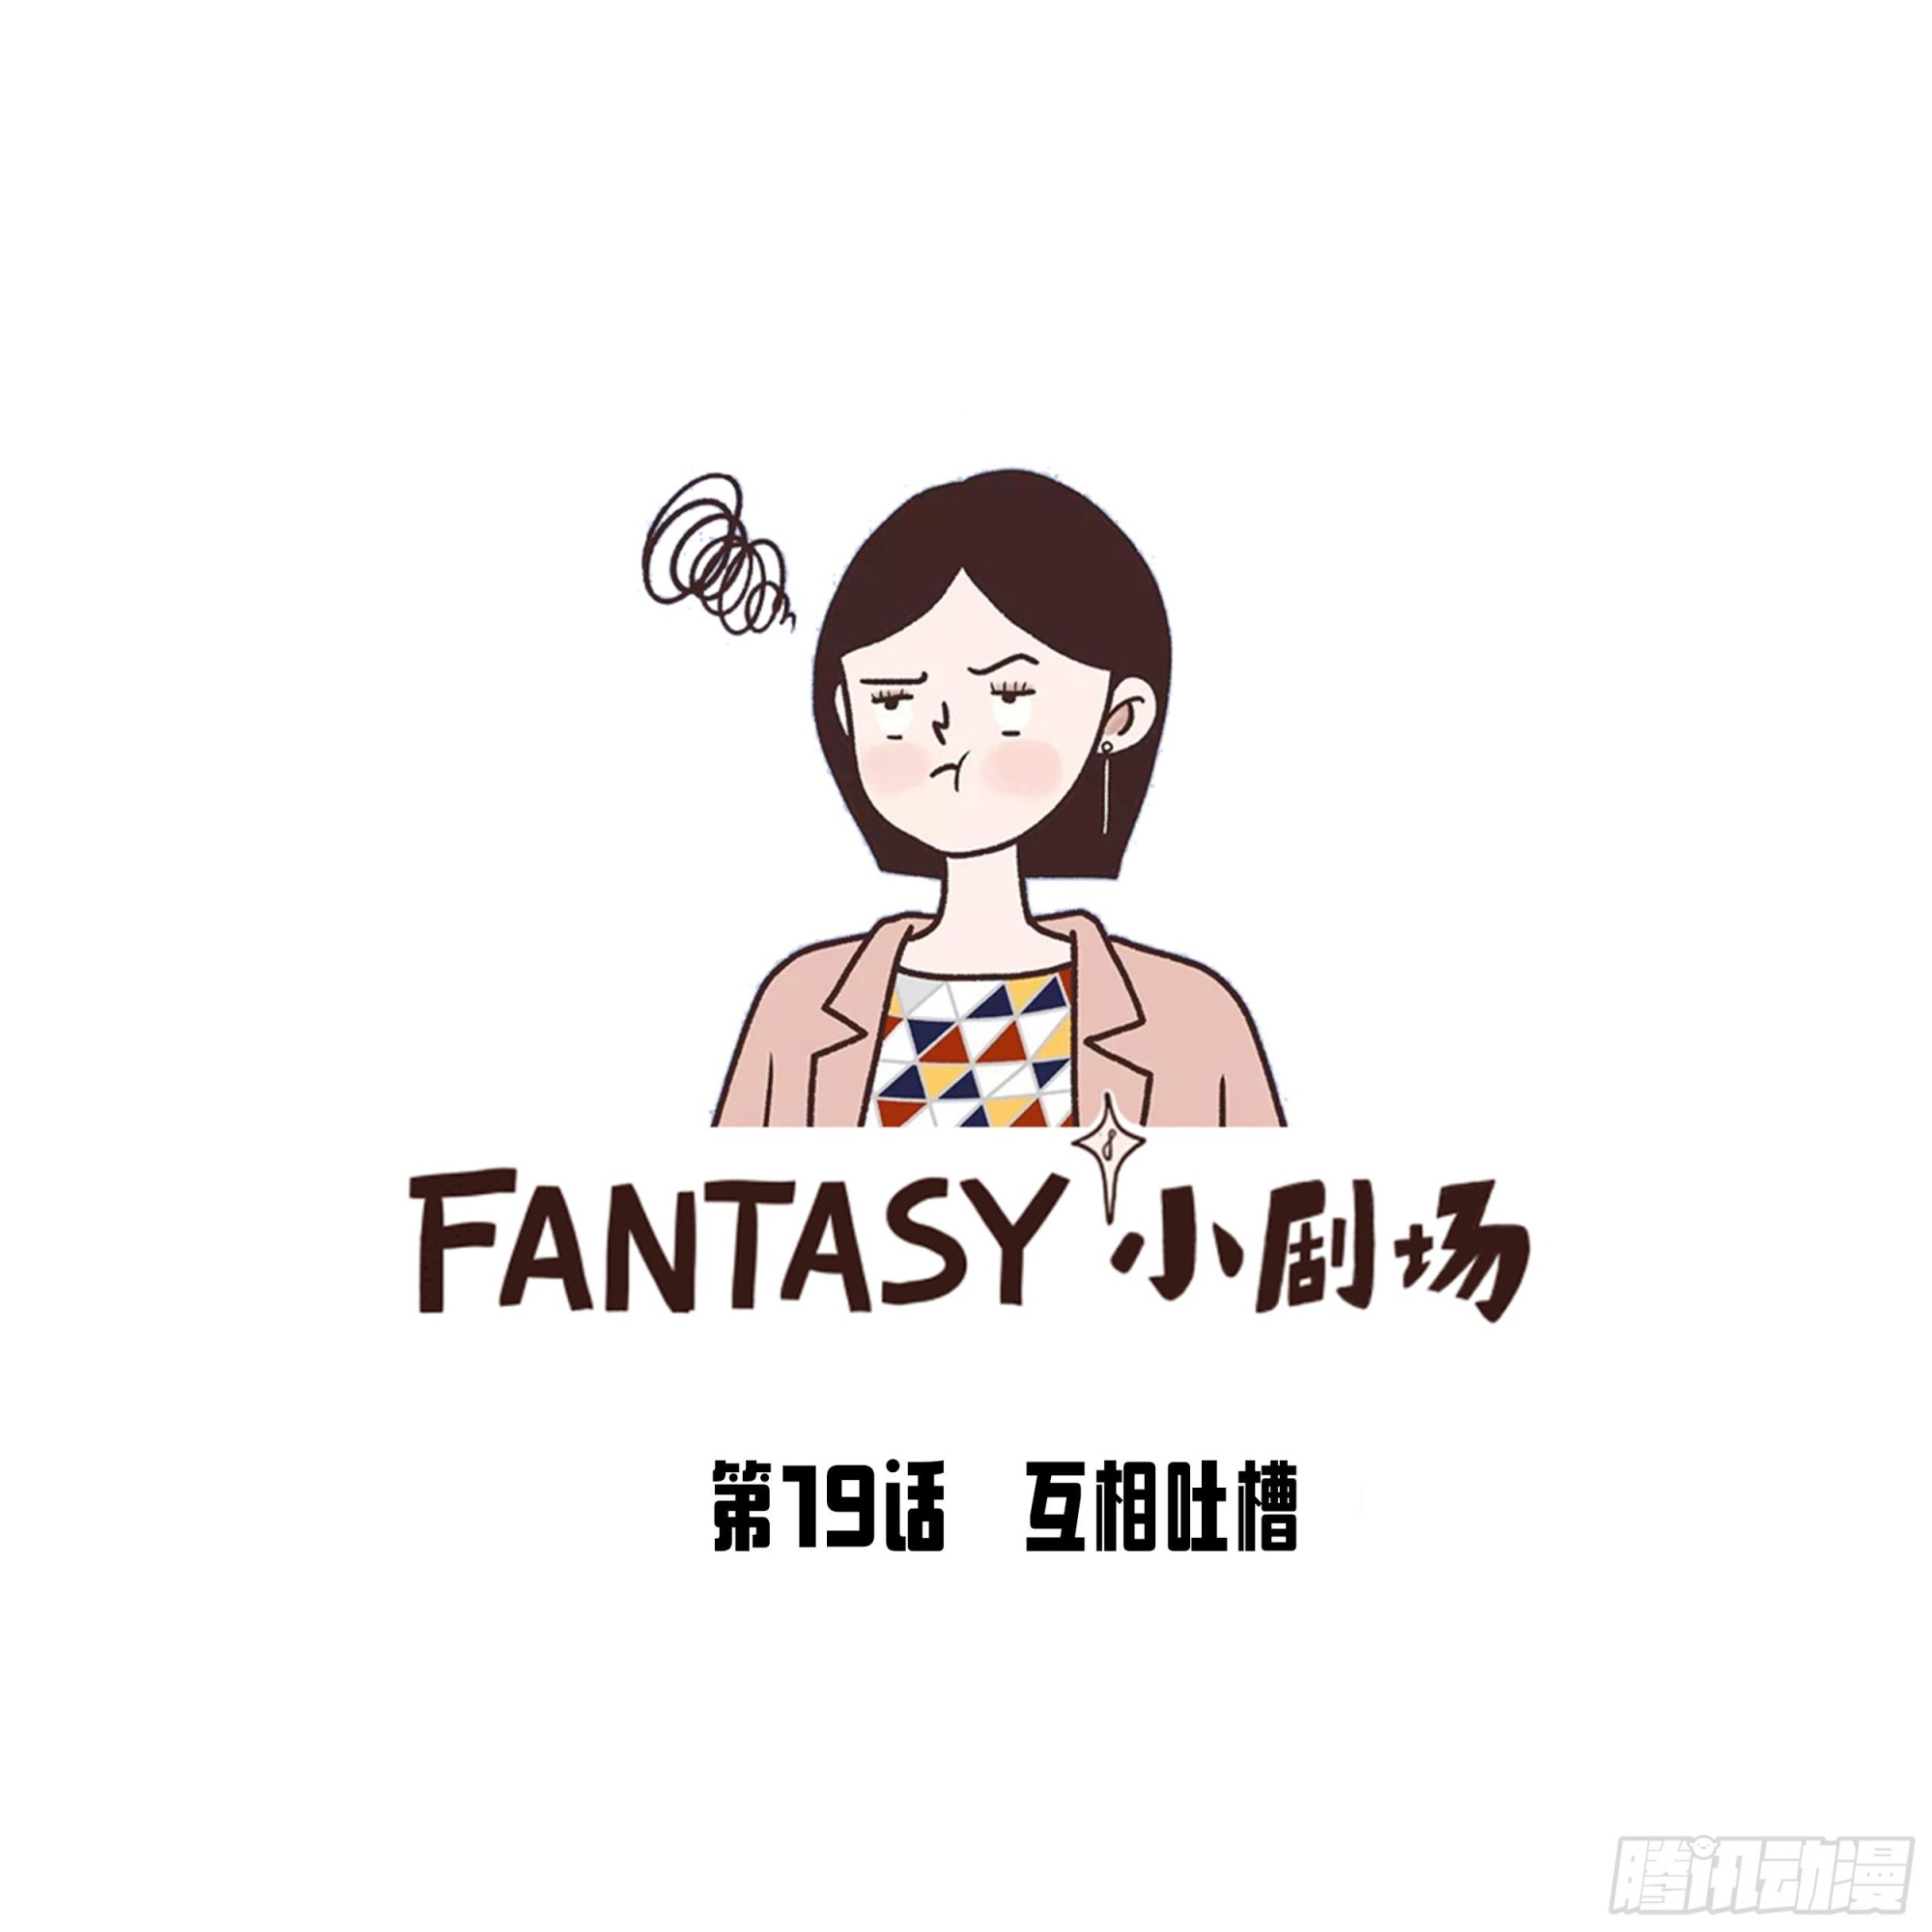 Fantasy小剧场 - 互相吐槽 - 1